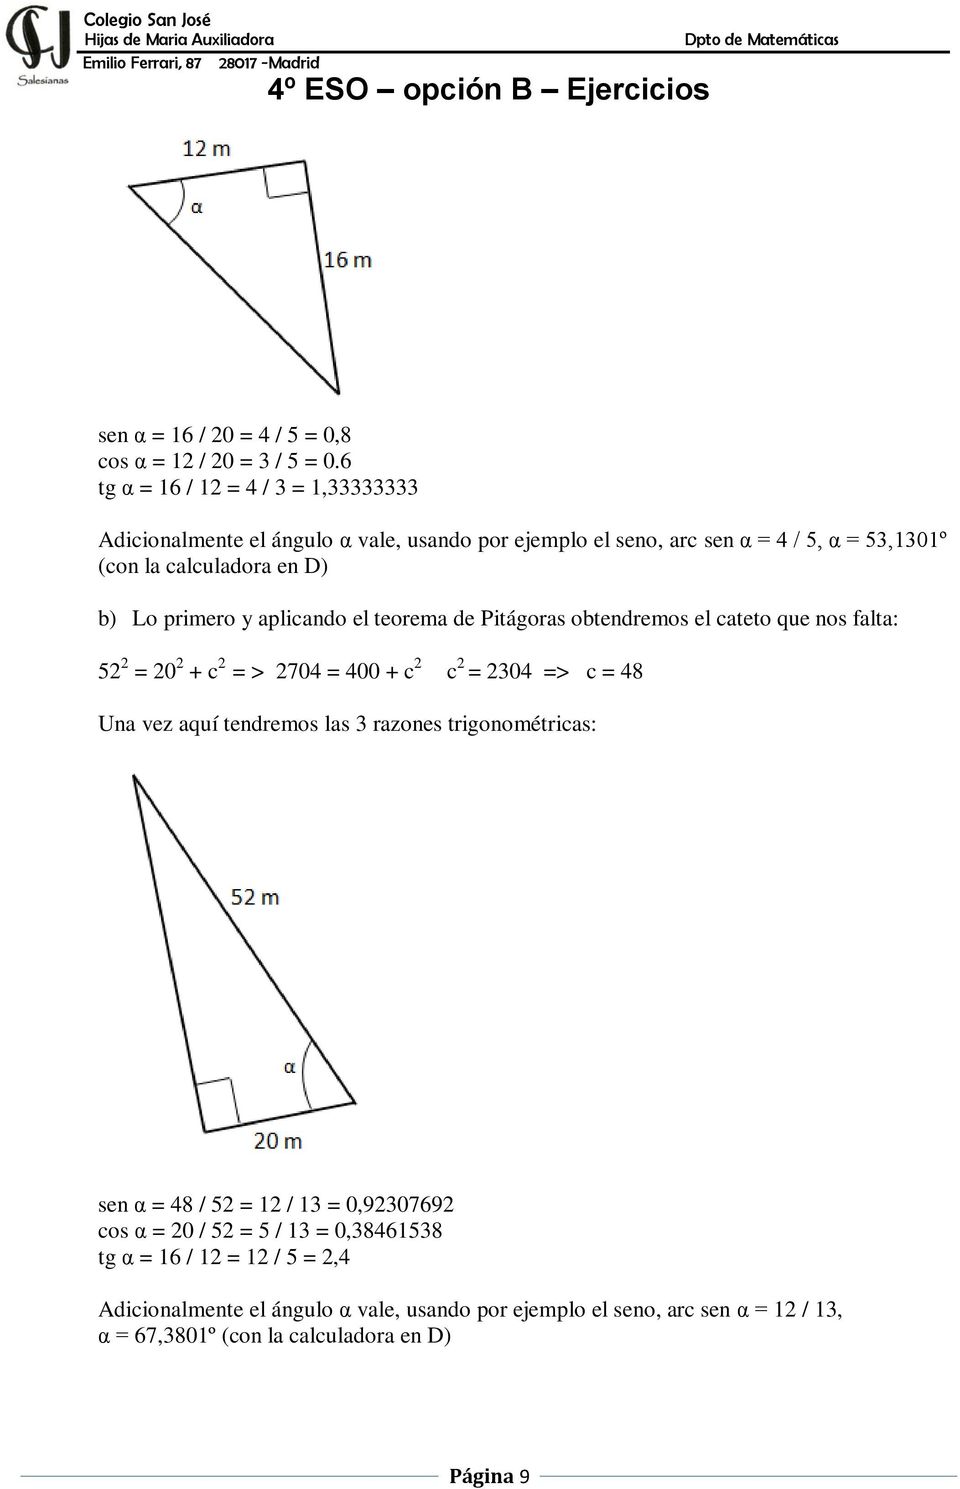 Lo primero y aplicando el teorema de Pitágoras obtendremos el cateto que nos falta: 52 2 = 20 2 + c 2 = > 2704 = 400 + c 2 c 2 = 2304 => c = 48 Una vez aquí